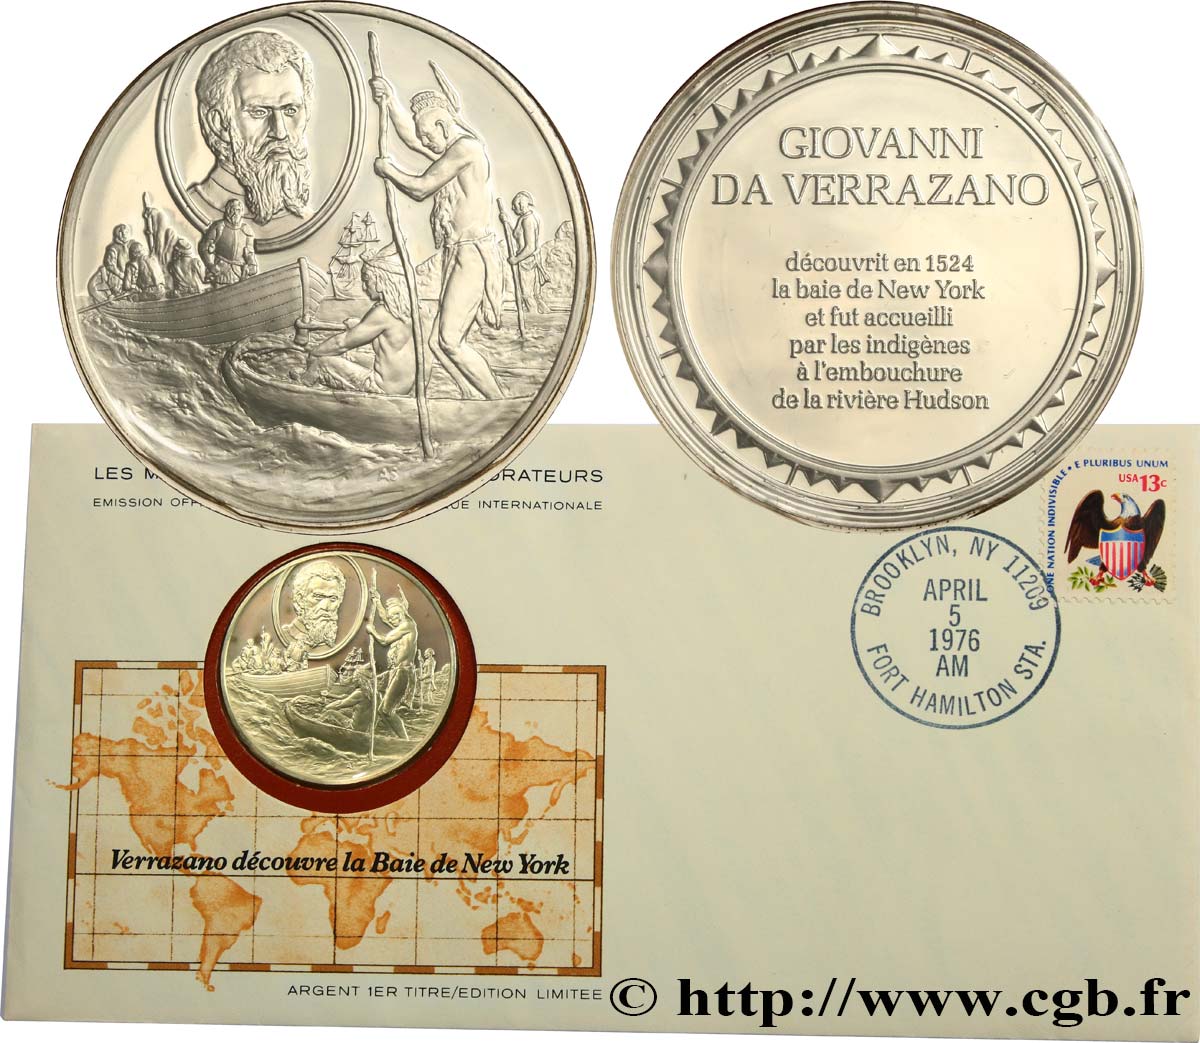 THE GREAT EXPLORERS  MEDALS Enveloppe “Timbre médaille”, Verrazano découvre la Baie de New York SC